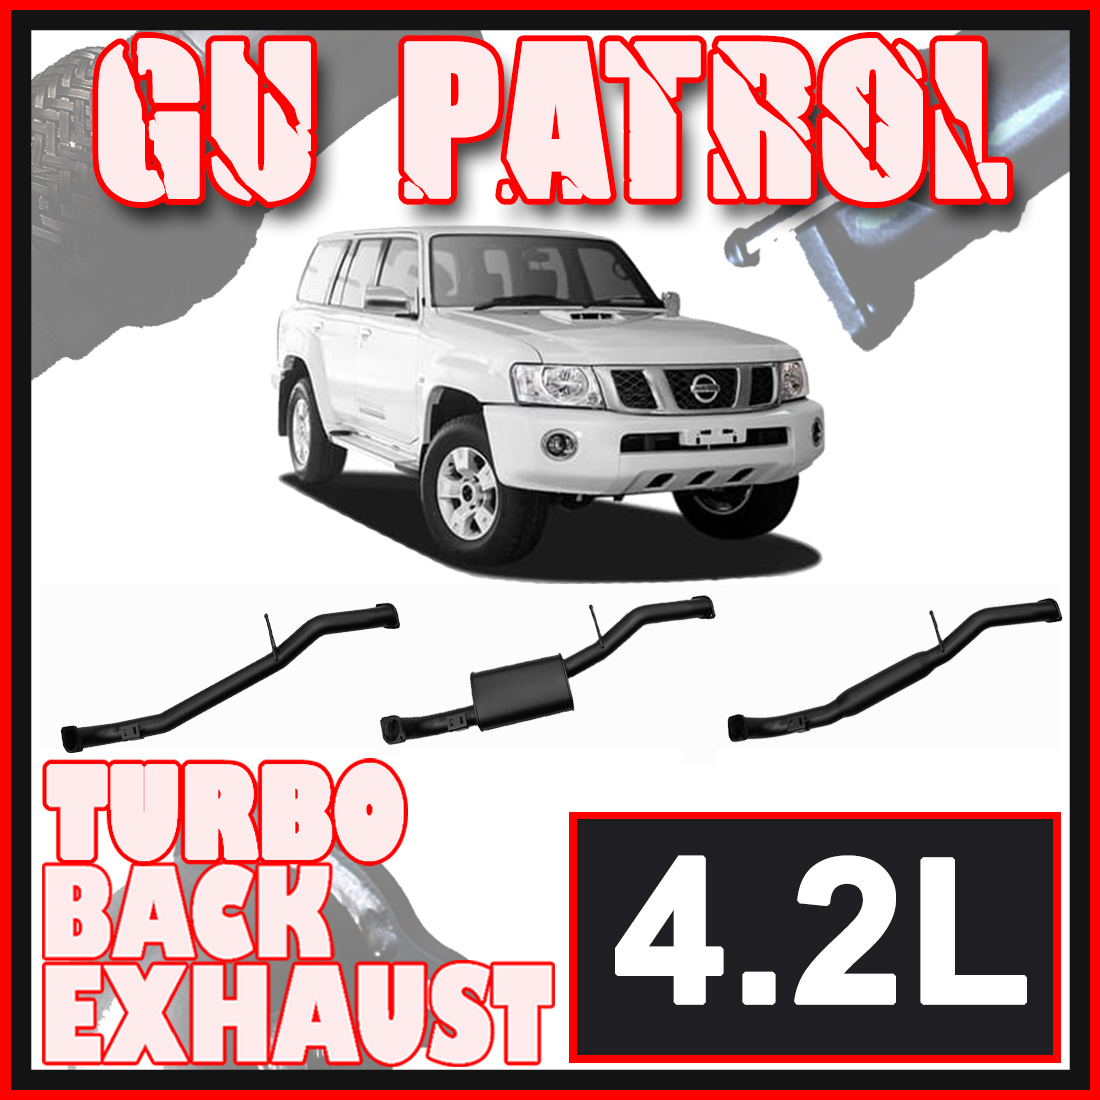 Nissan GU Patrol Exhaust Wagon 4.2L 3" Inch Systems image